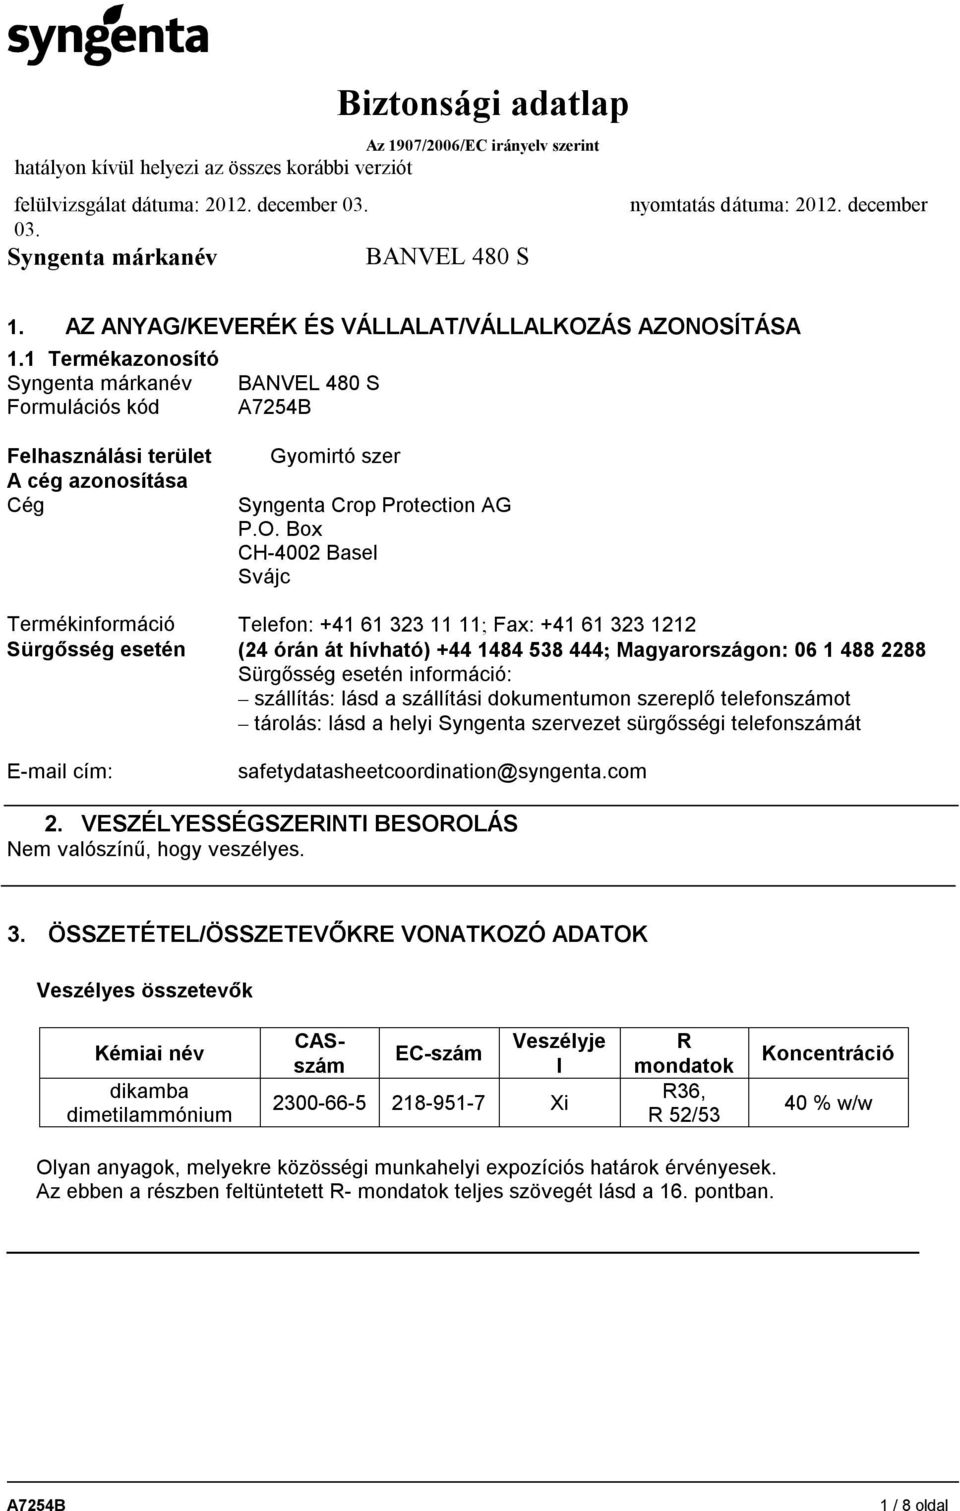 OSÍTÁSA 1.1 Termékazonosító Formulációs kód Felhasználási terület A cég azonosítása Cég Gyomirtó szer Syngenta Crop Protection AG P.O. Box CH-4002 Basel Svájc Termékinformáció Telefon: +41 61 323 11